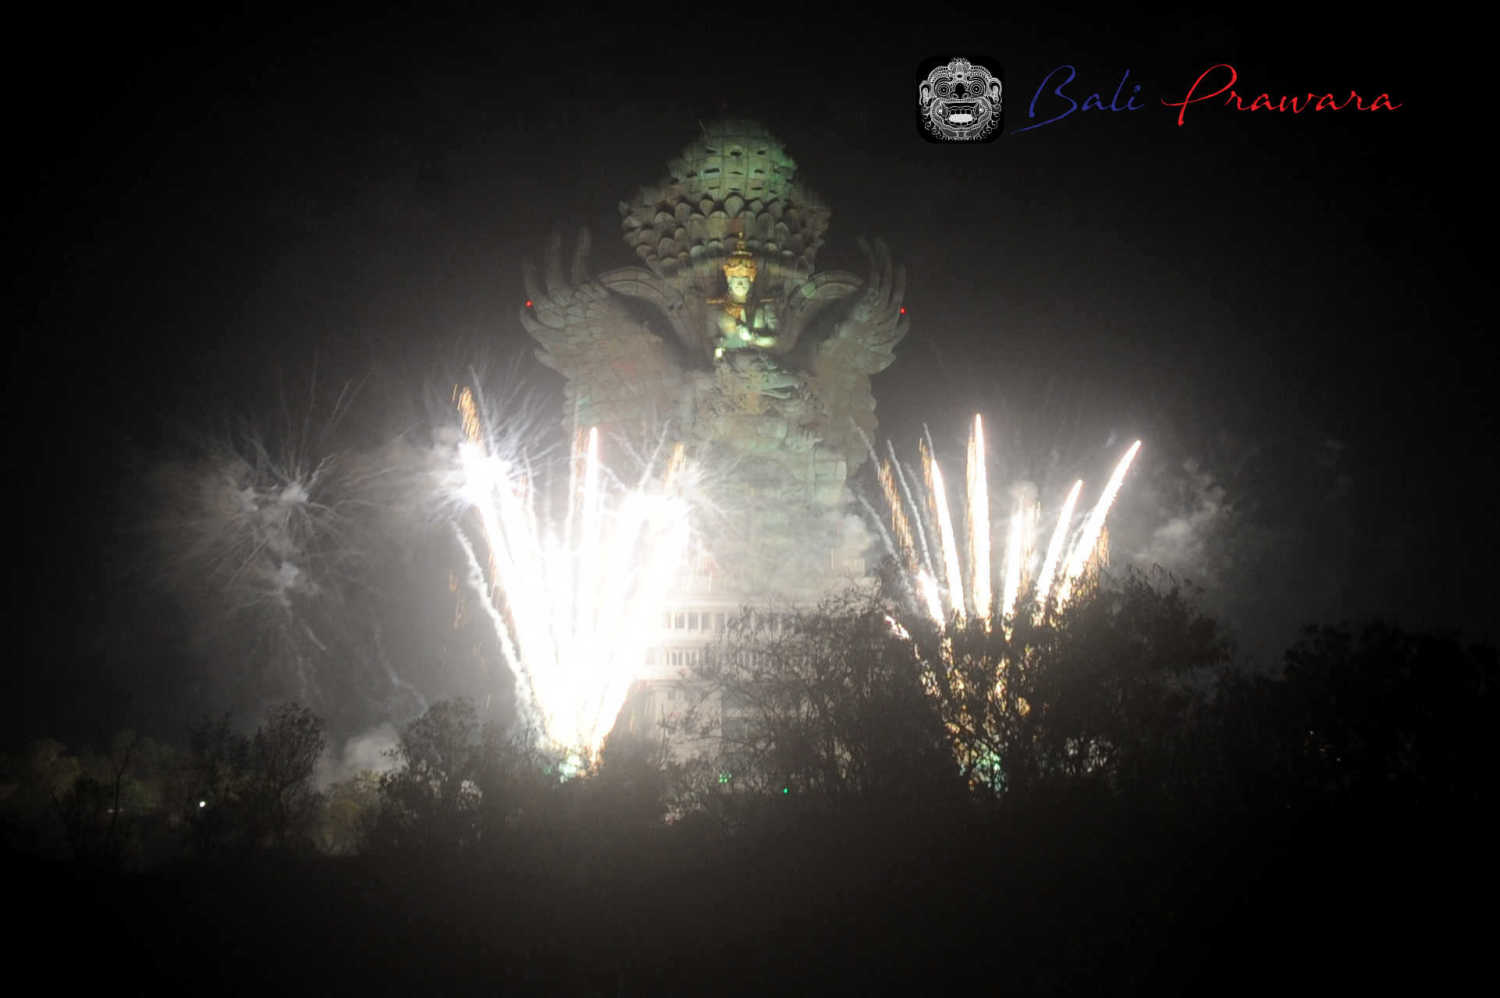  Spektakuler, GWK Cultural Park Persembahkan “The Biggest Fireworks Show in Bali” Sambut Tahun 2020